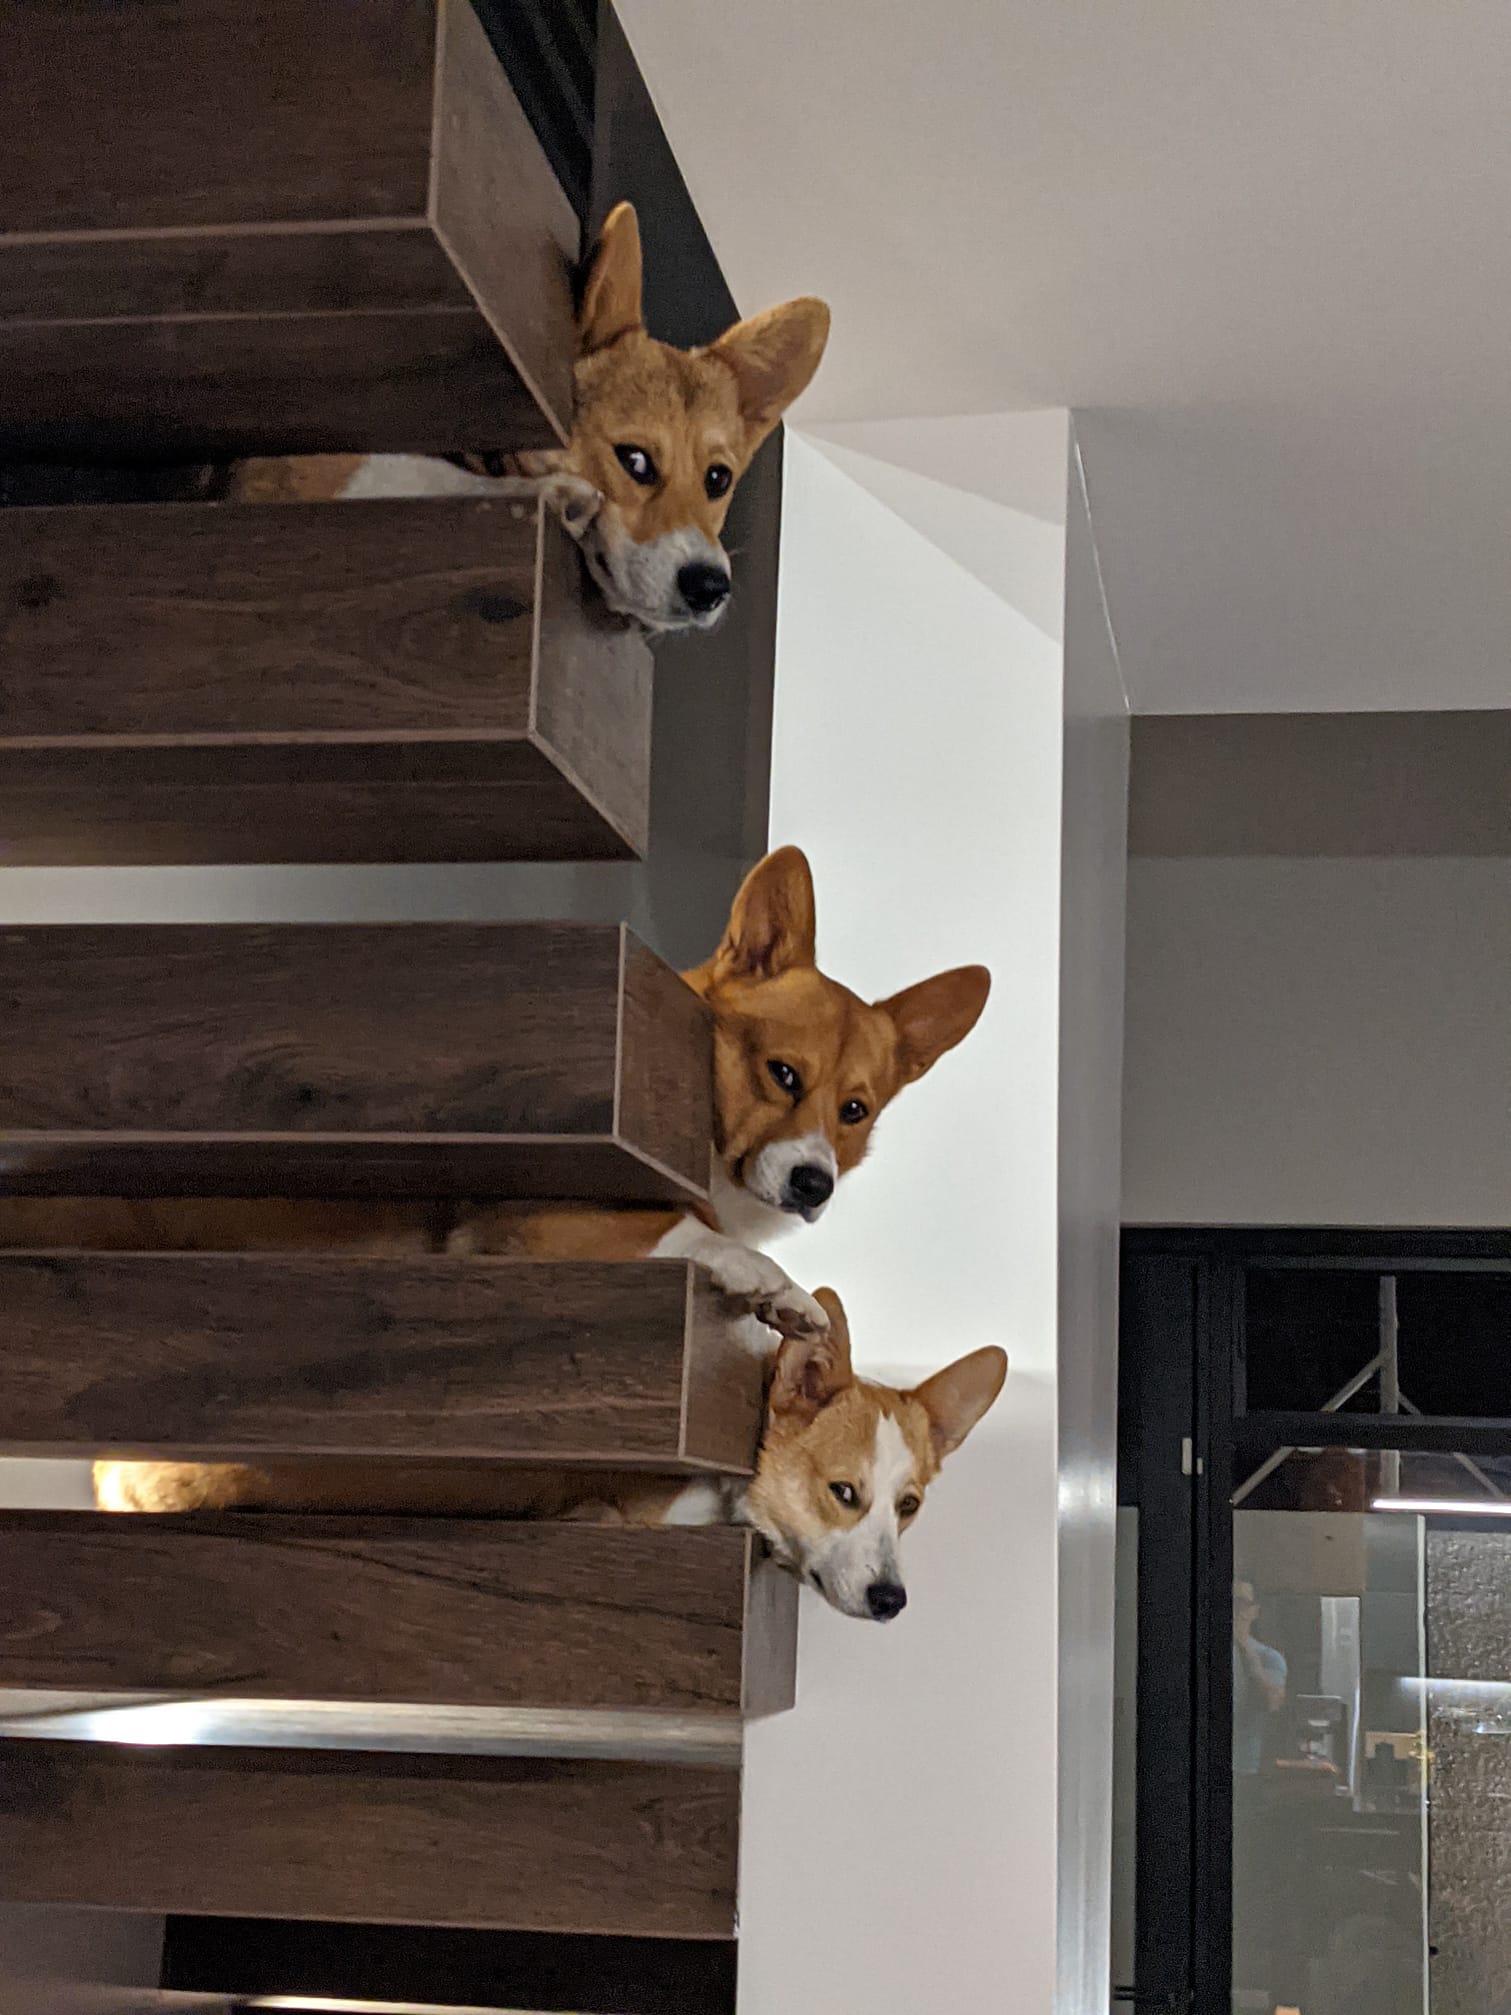 3 corgis on a staircase